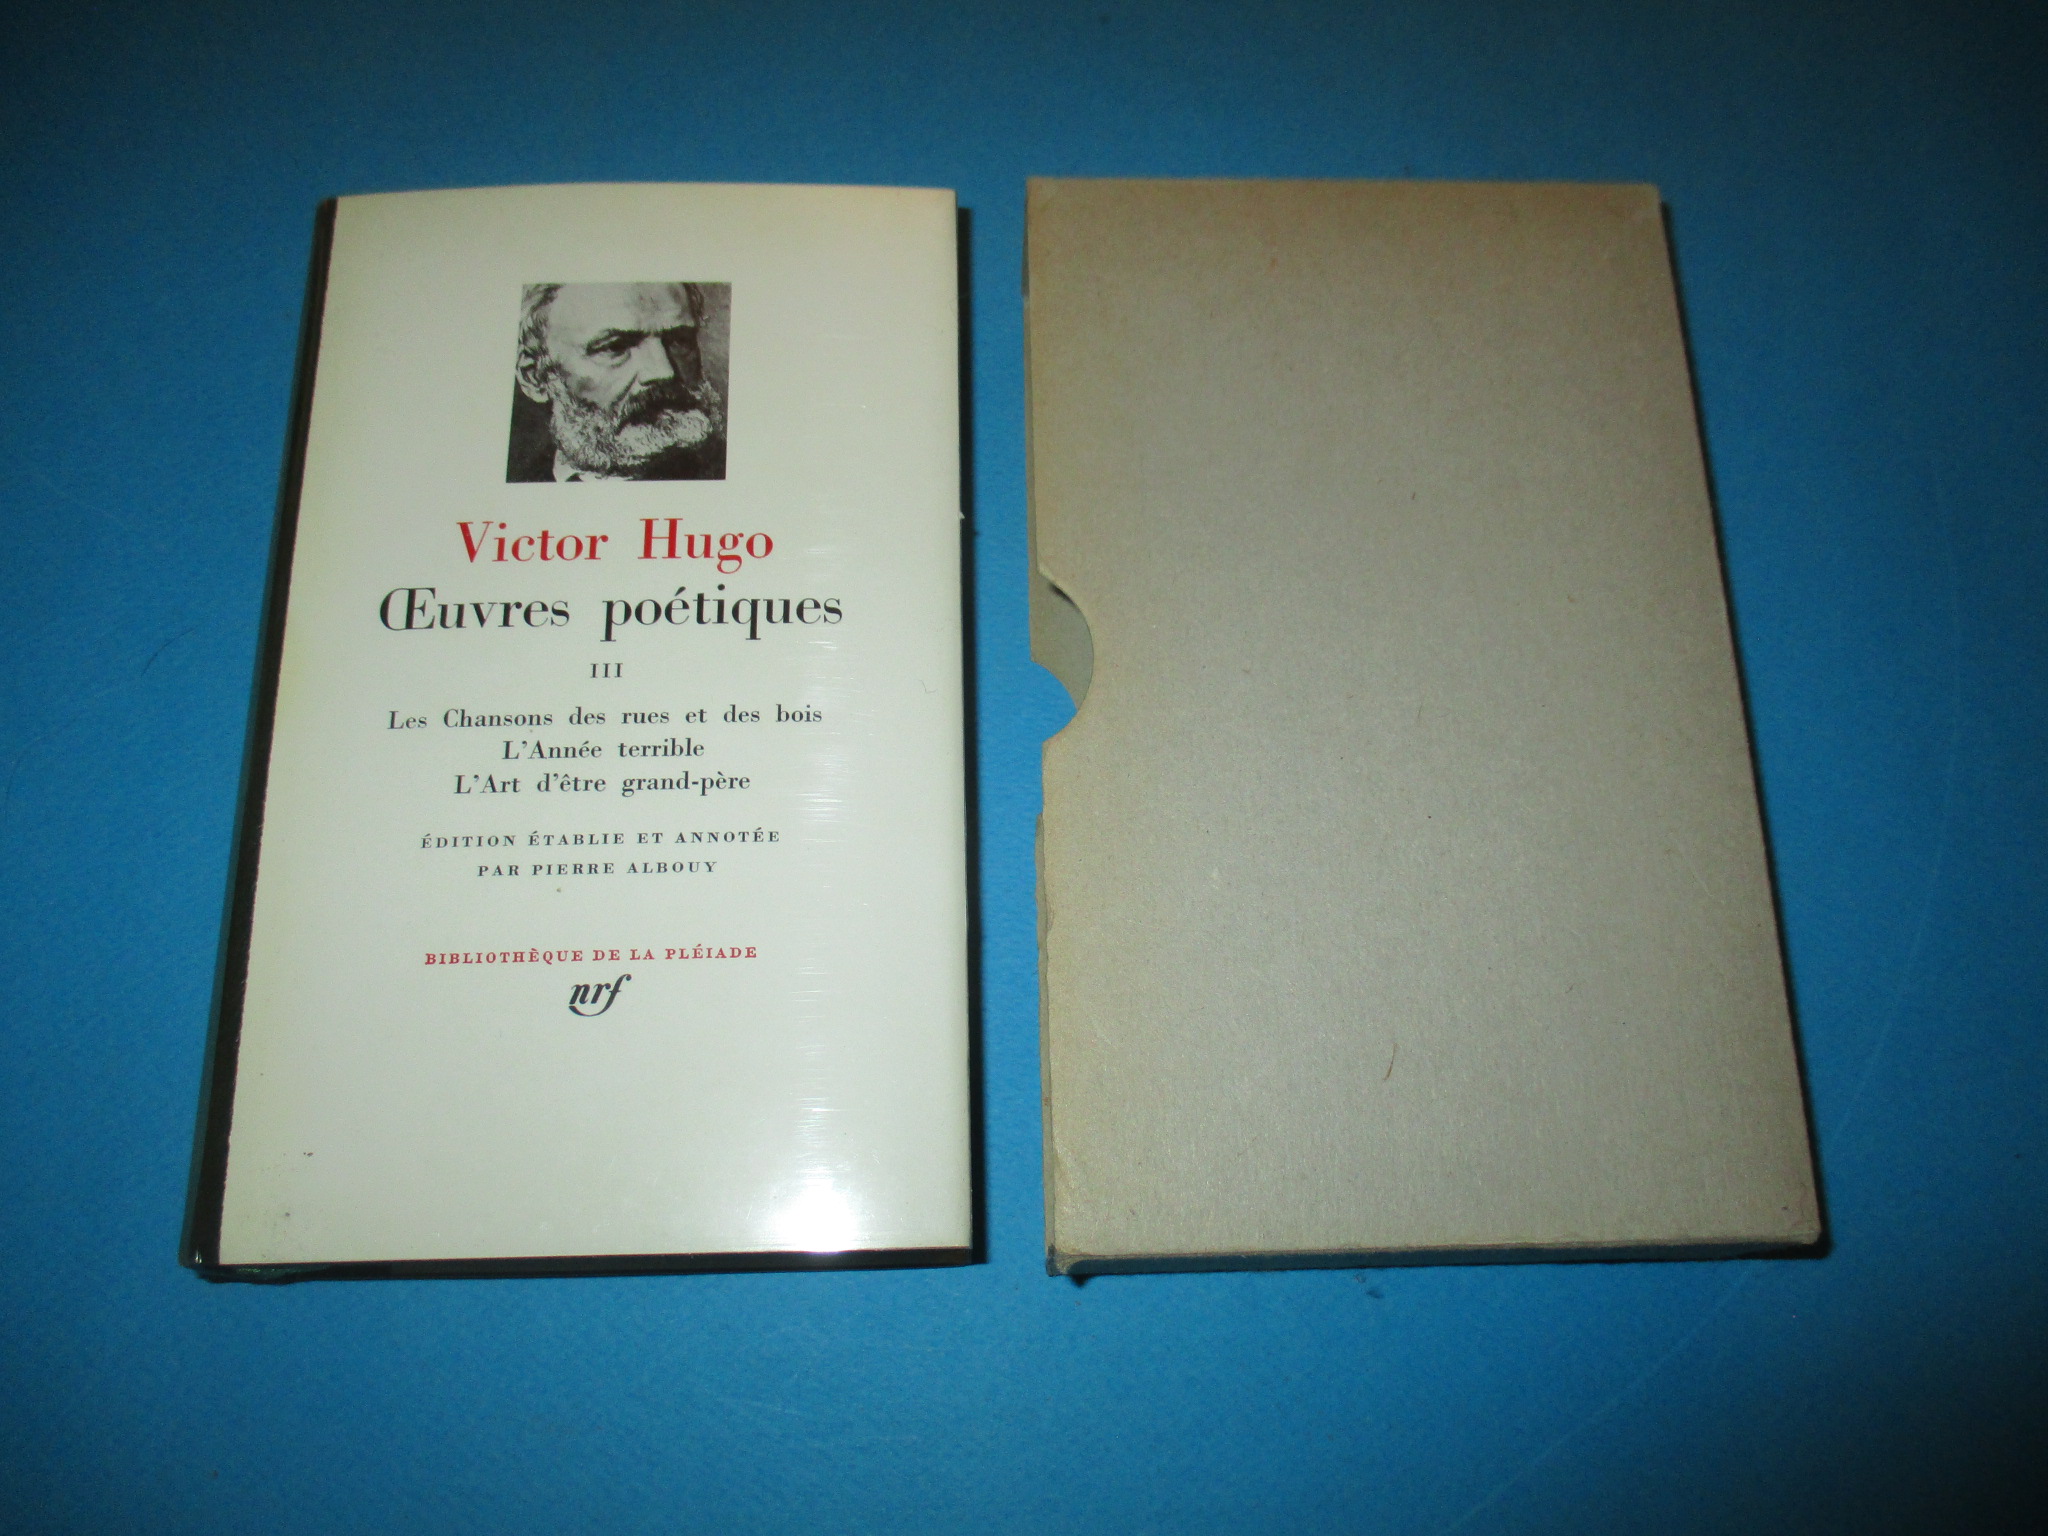 Oeuvres poétiques III, tome 3, Victor Hugo, La Pléiade 1974